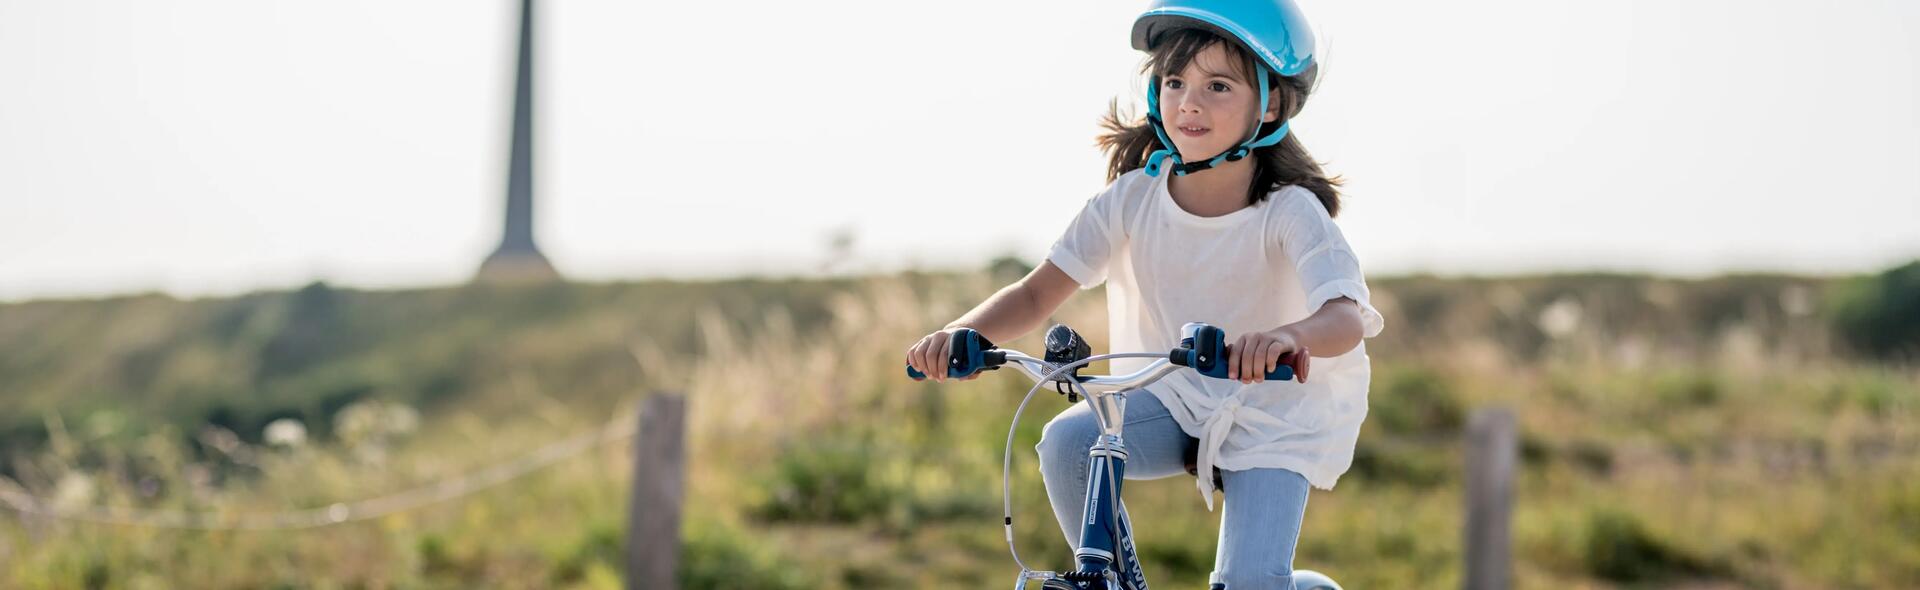 dziecko jadące na rowerze w kasku rowerowym